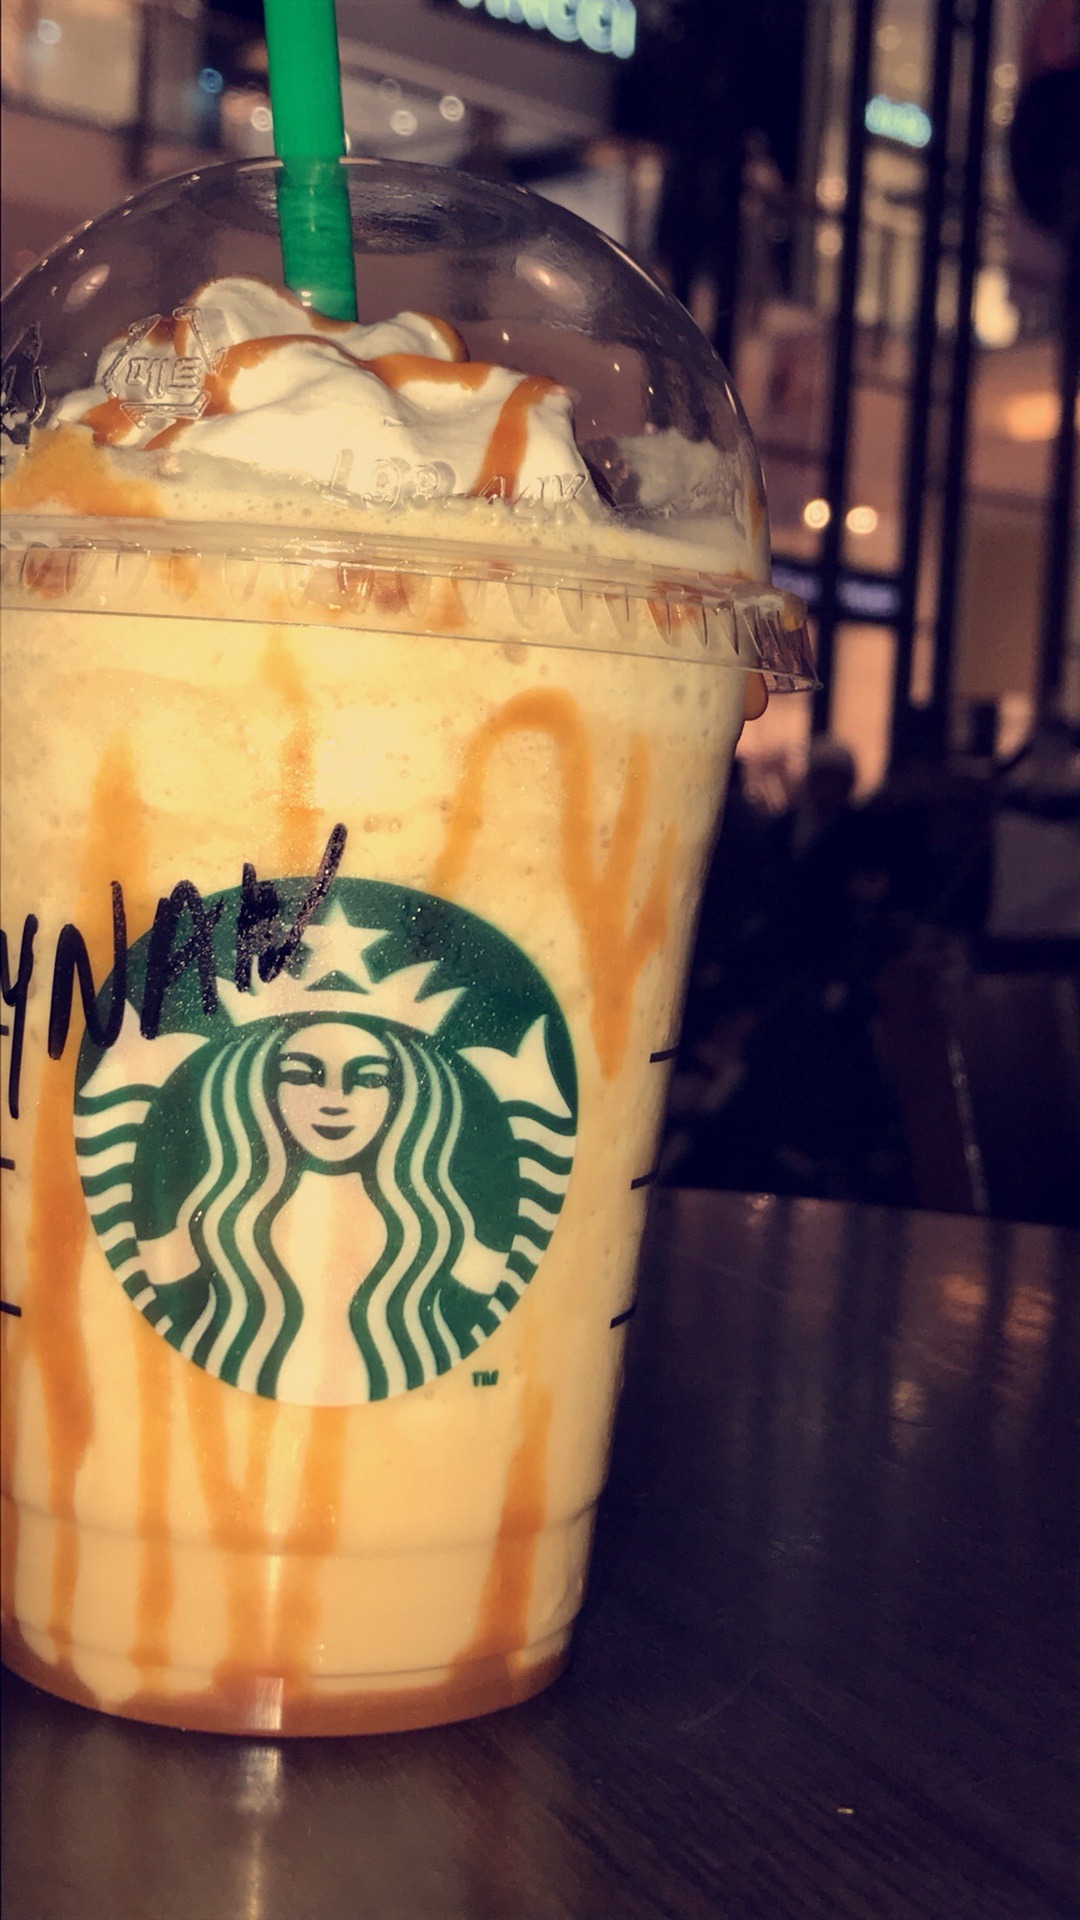 يعدل المزاج😍😍😍 @ Starbucks - Bahrain